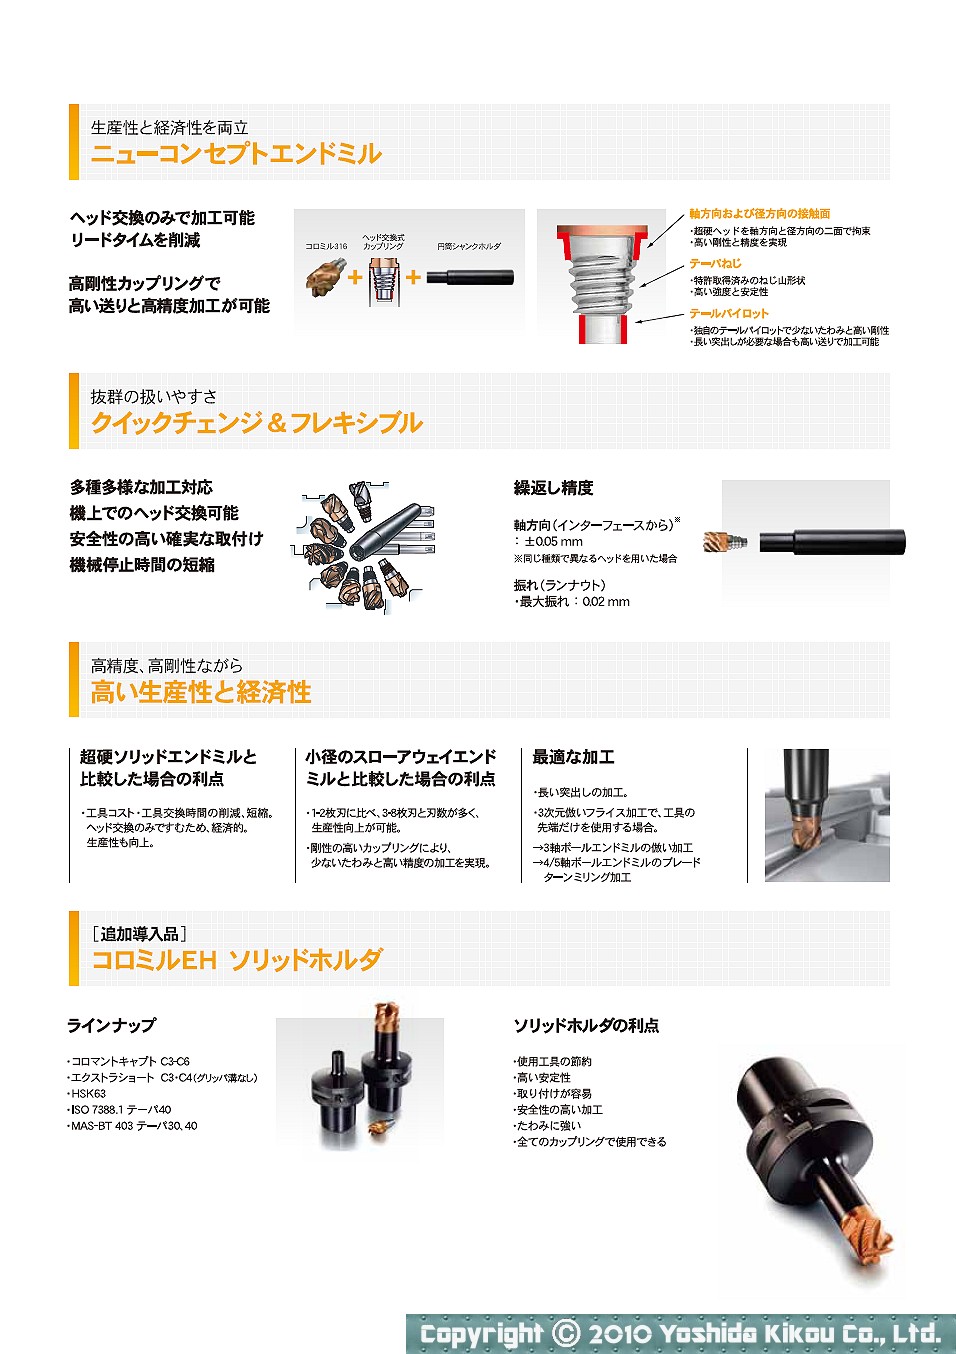 吉田機工株式会社 Yoshida Kikou Co.,Ltd. □ ヘッド交換式エンドミル